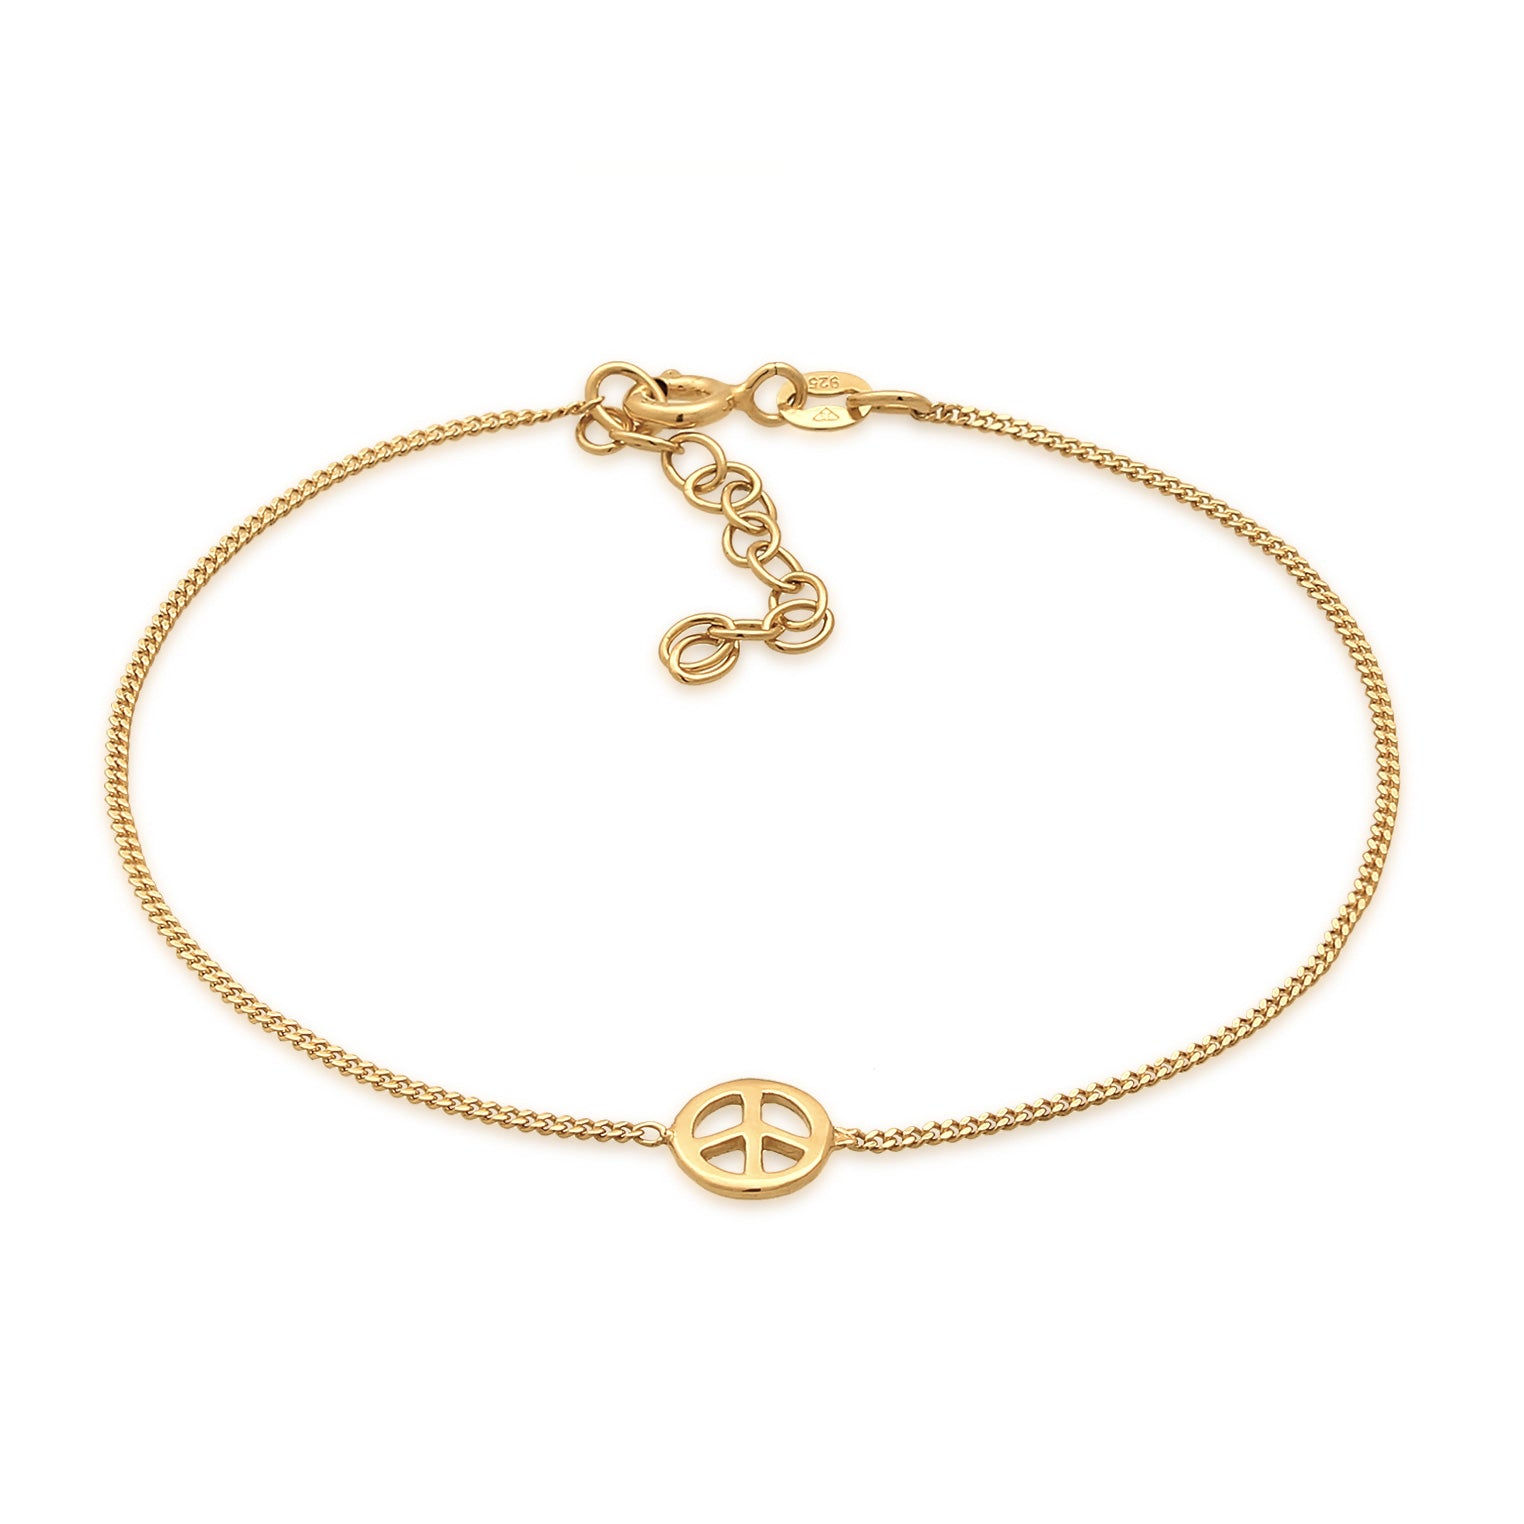 Buy shop Jewelry – Elli bracelets online in Elli\'s